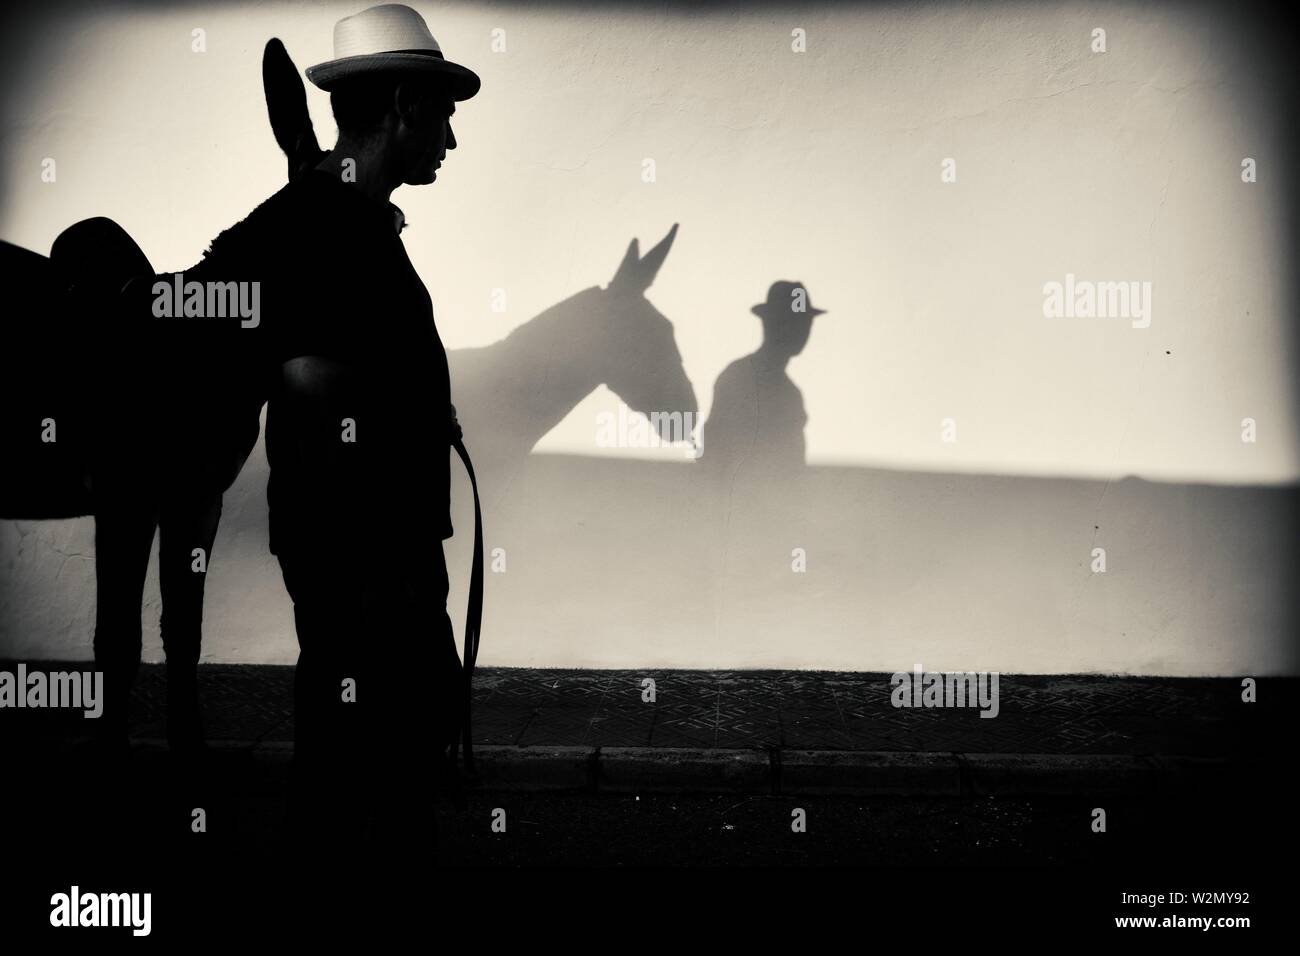 Silhouette eines Mannes in einen Strohhut mit einem Esel an der Wand reflektiert. Mahon, Balearen, Spanien, Europa. Stockfoto